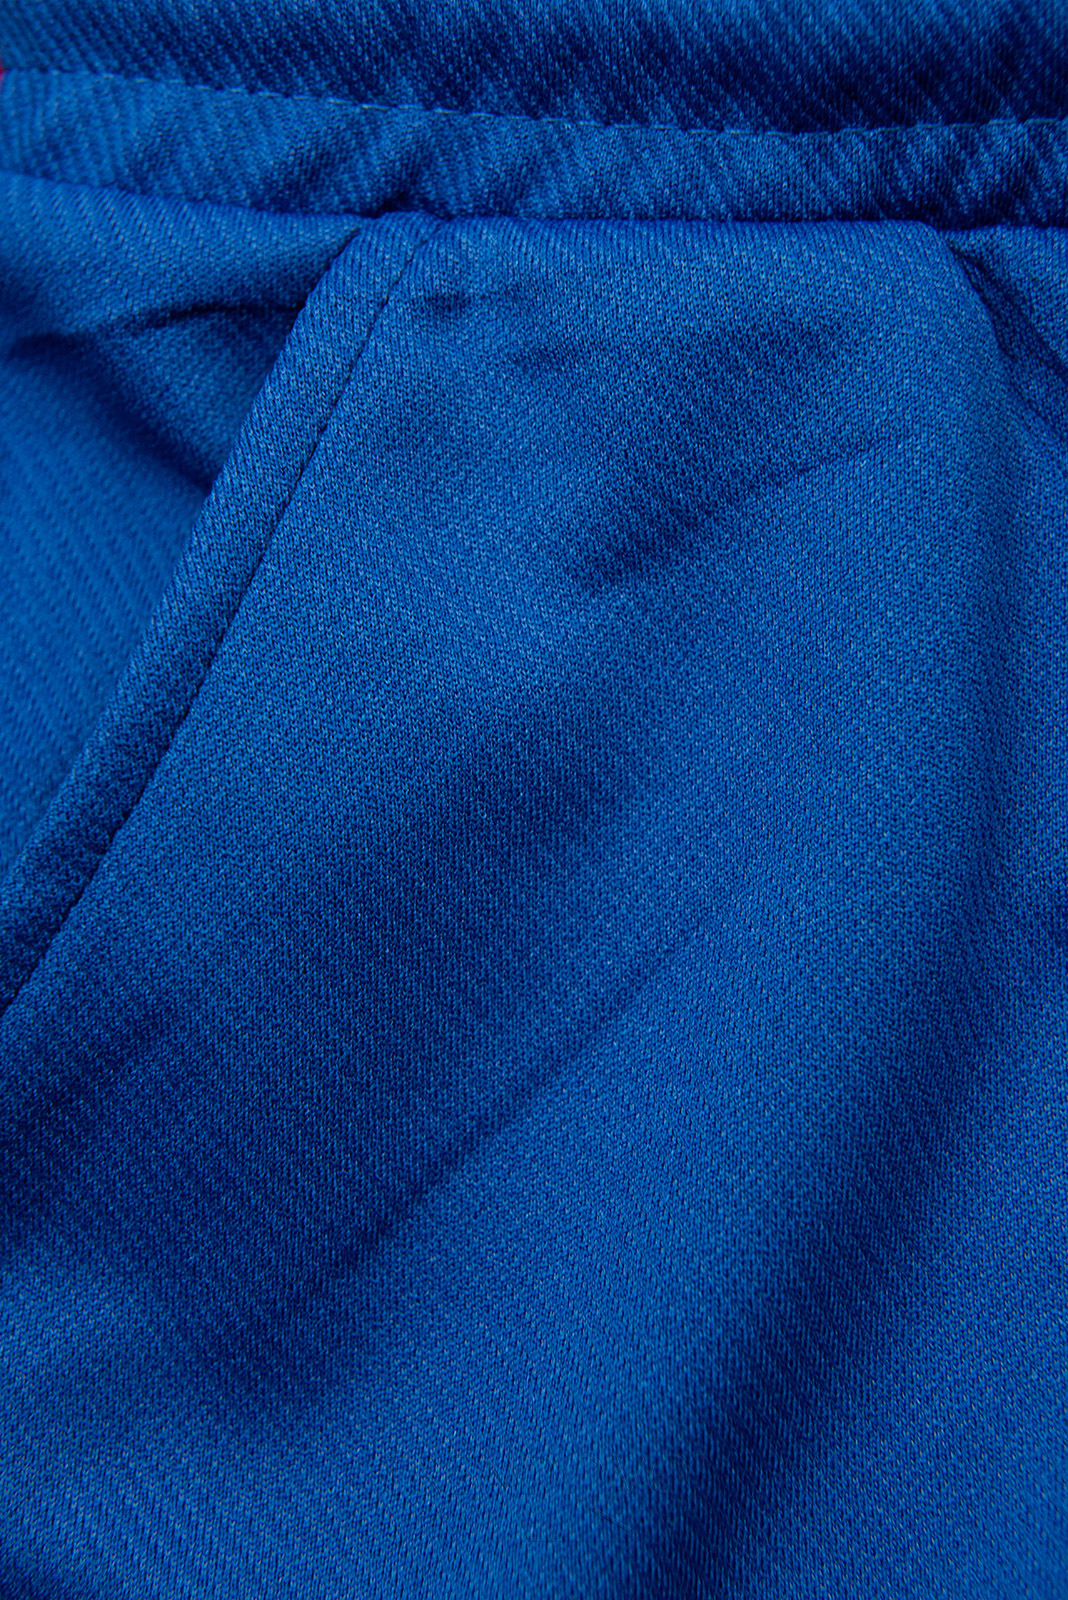 Kobaltově modré sportovní kalhoty